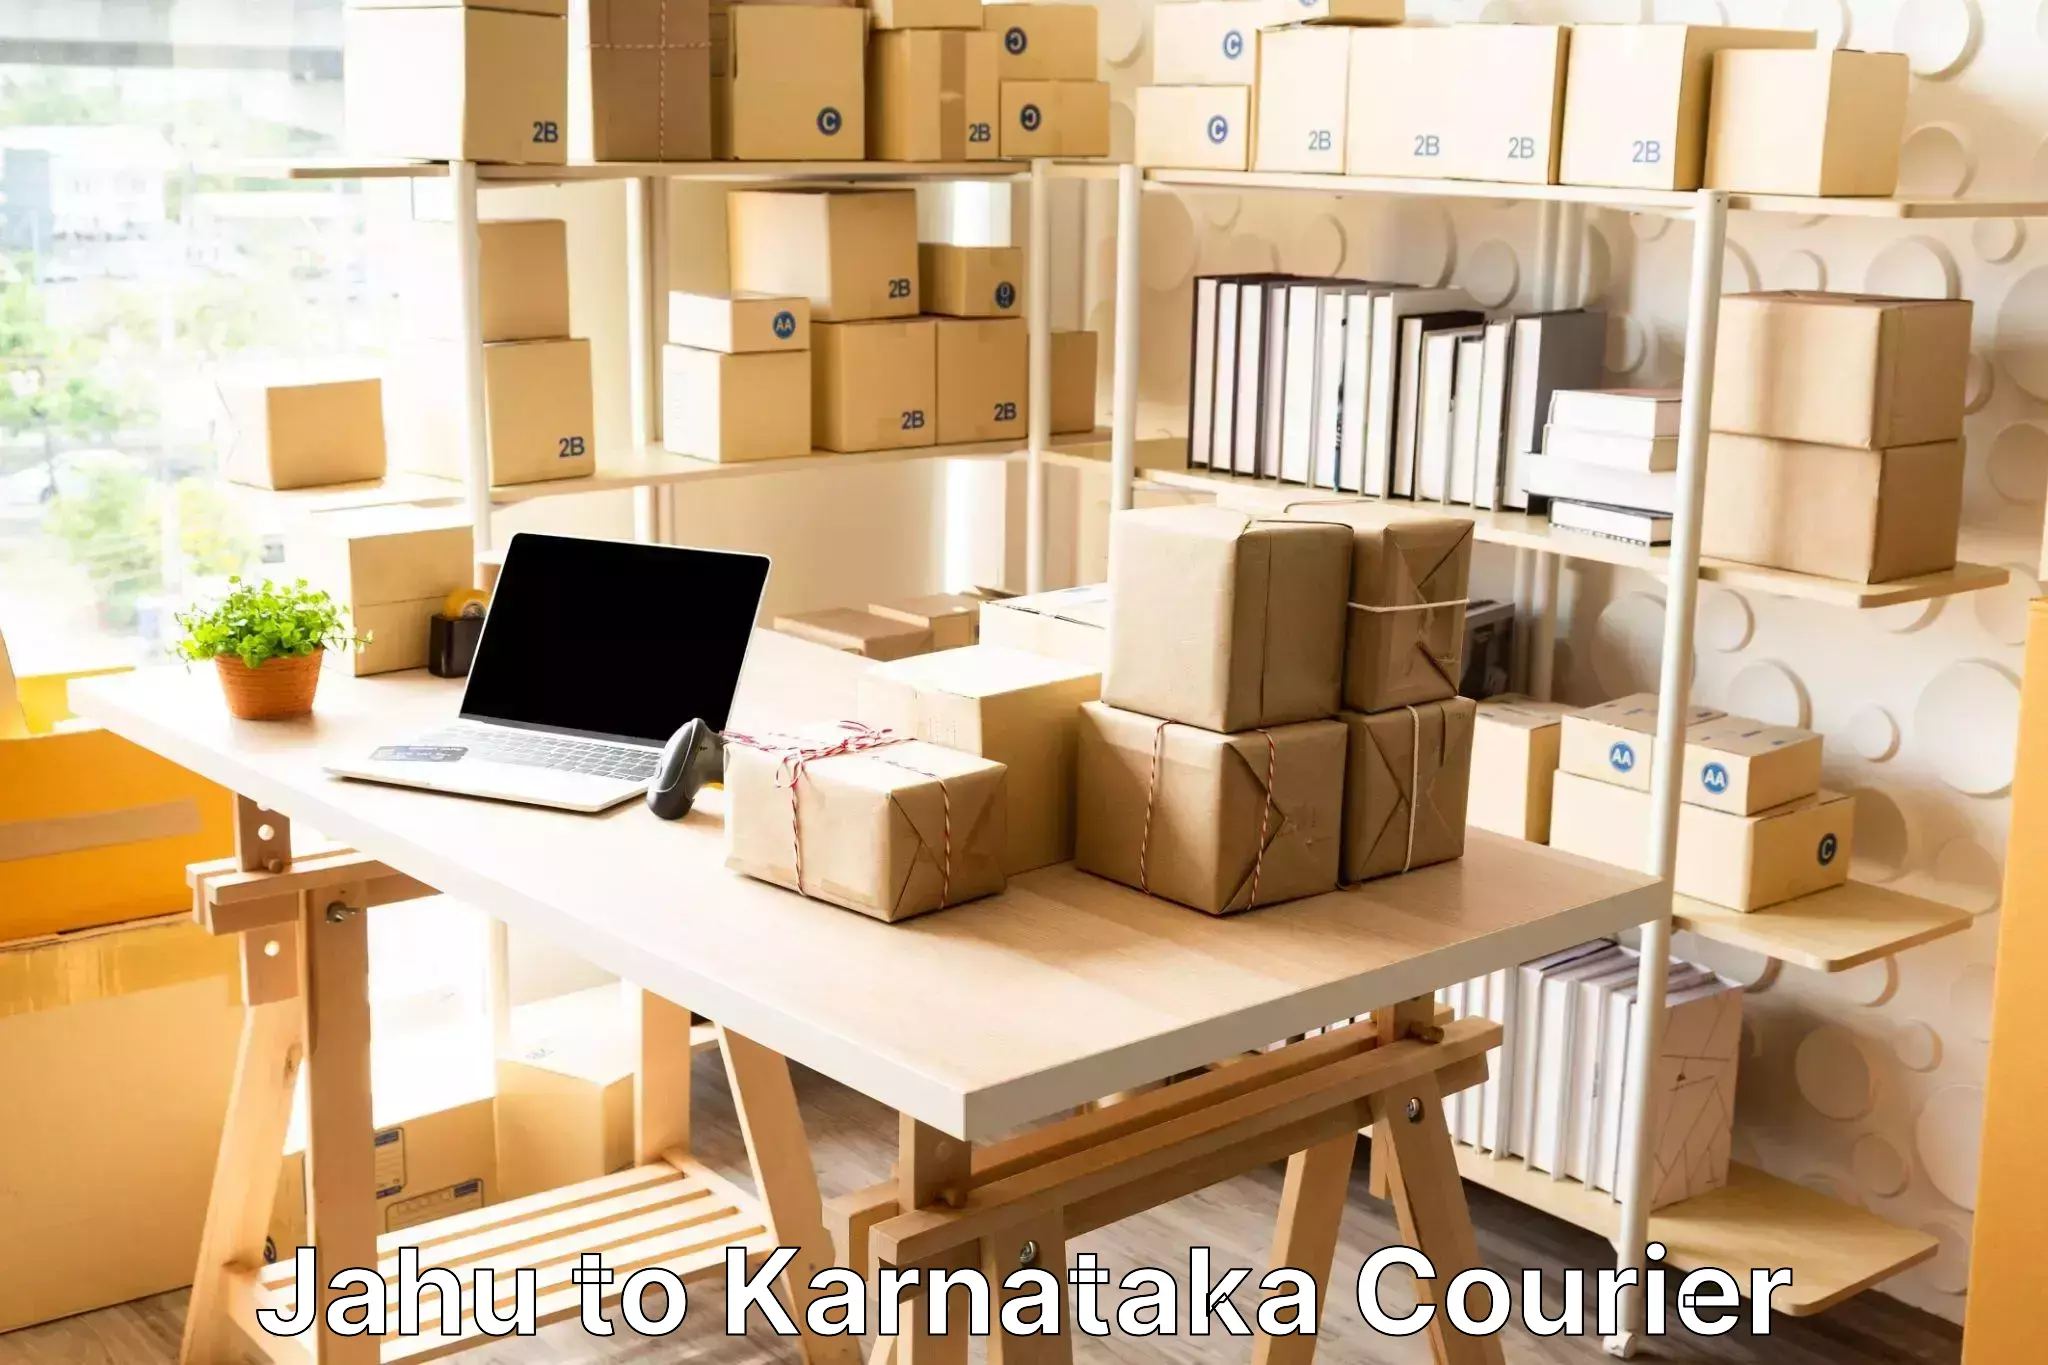 Baggage shipping experts Jahu to Karnataka